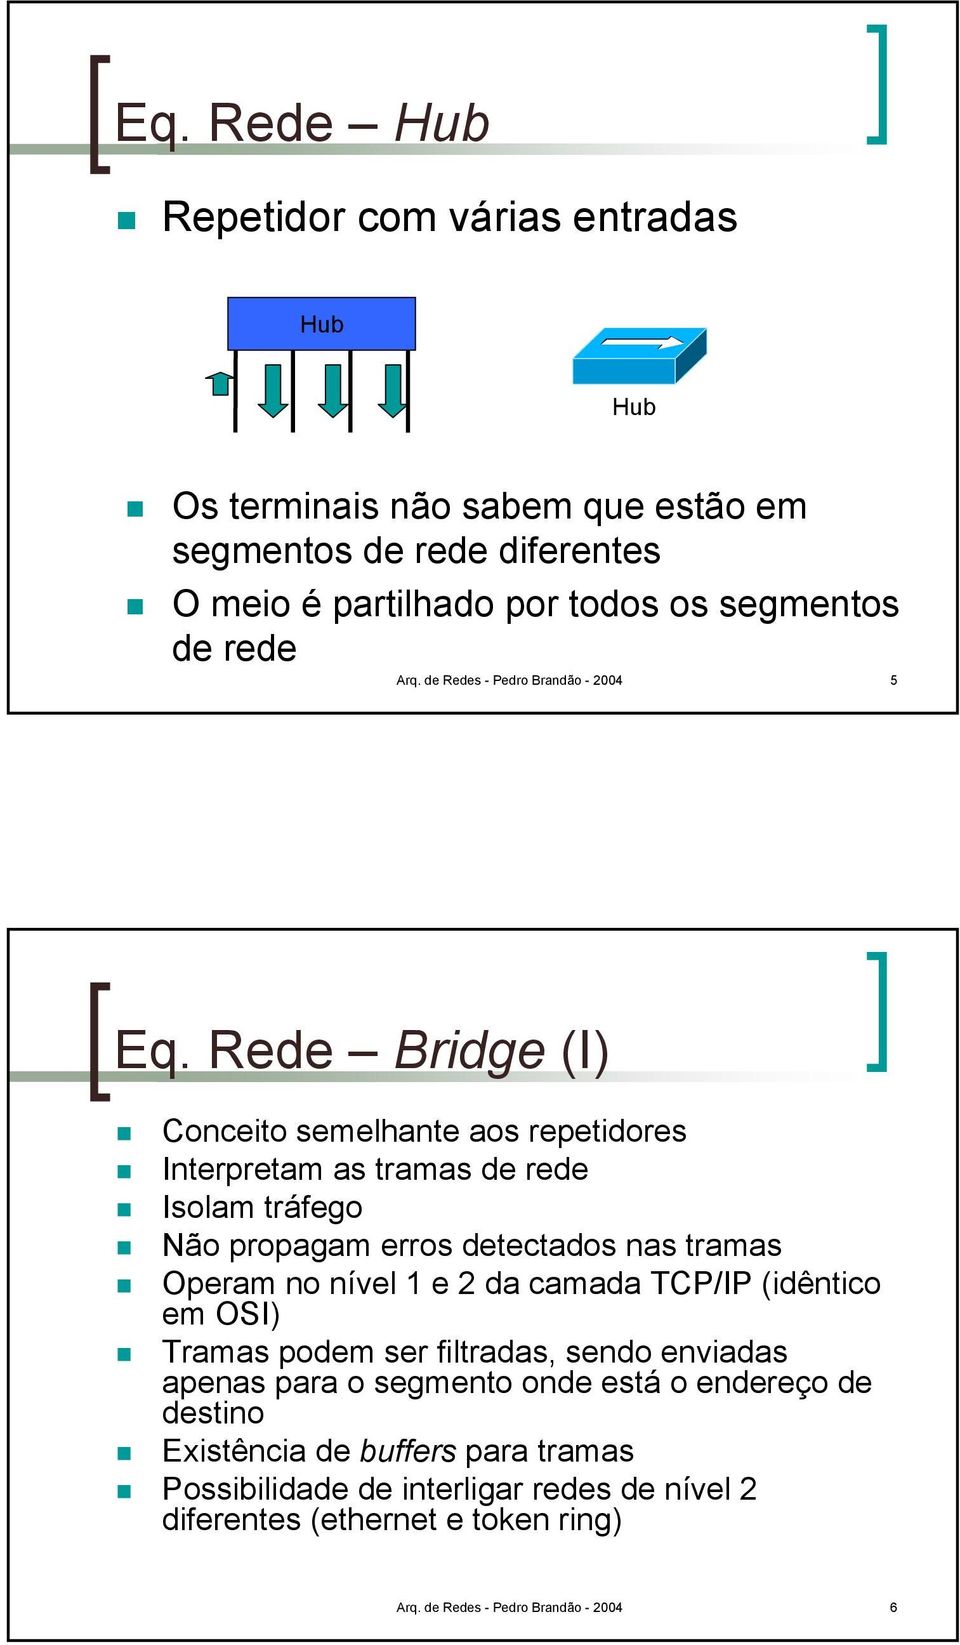 Rede Bridge (I) Conceito semelhante aos repetidores Interpretam as tramas de rede Isolam tráfego Não propagam erros detectados nas tramas Operam no nível 1 e 2 da